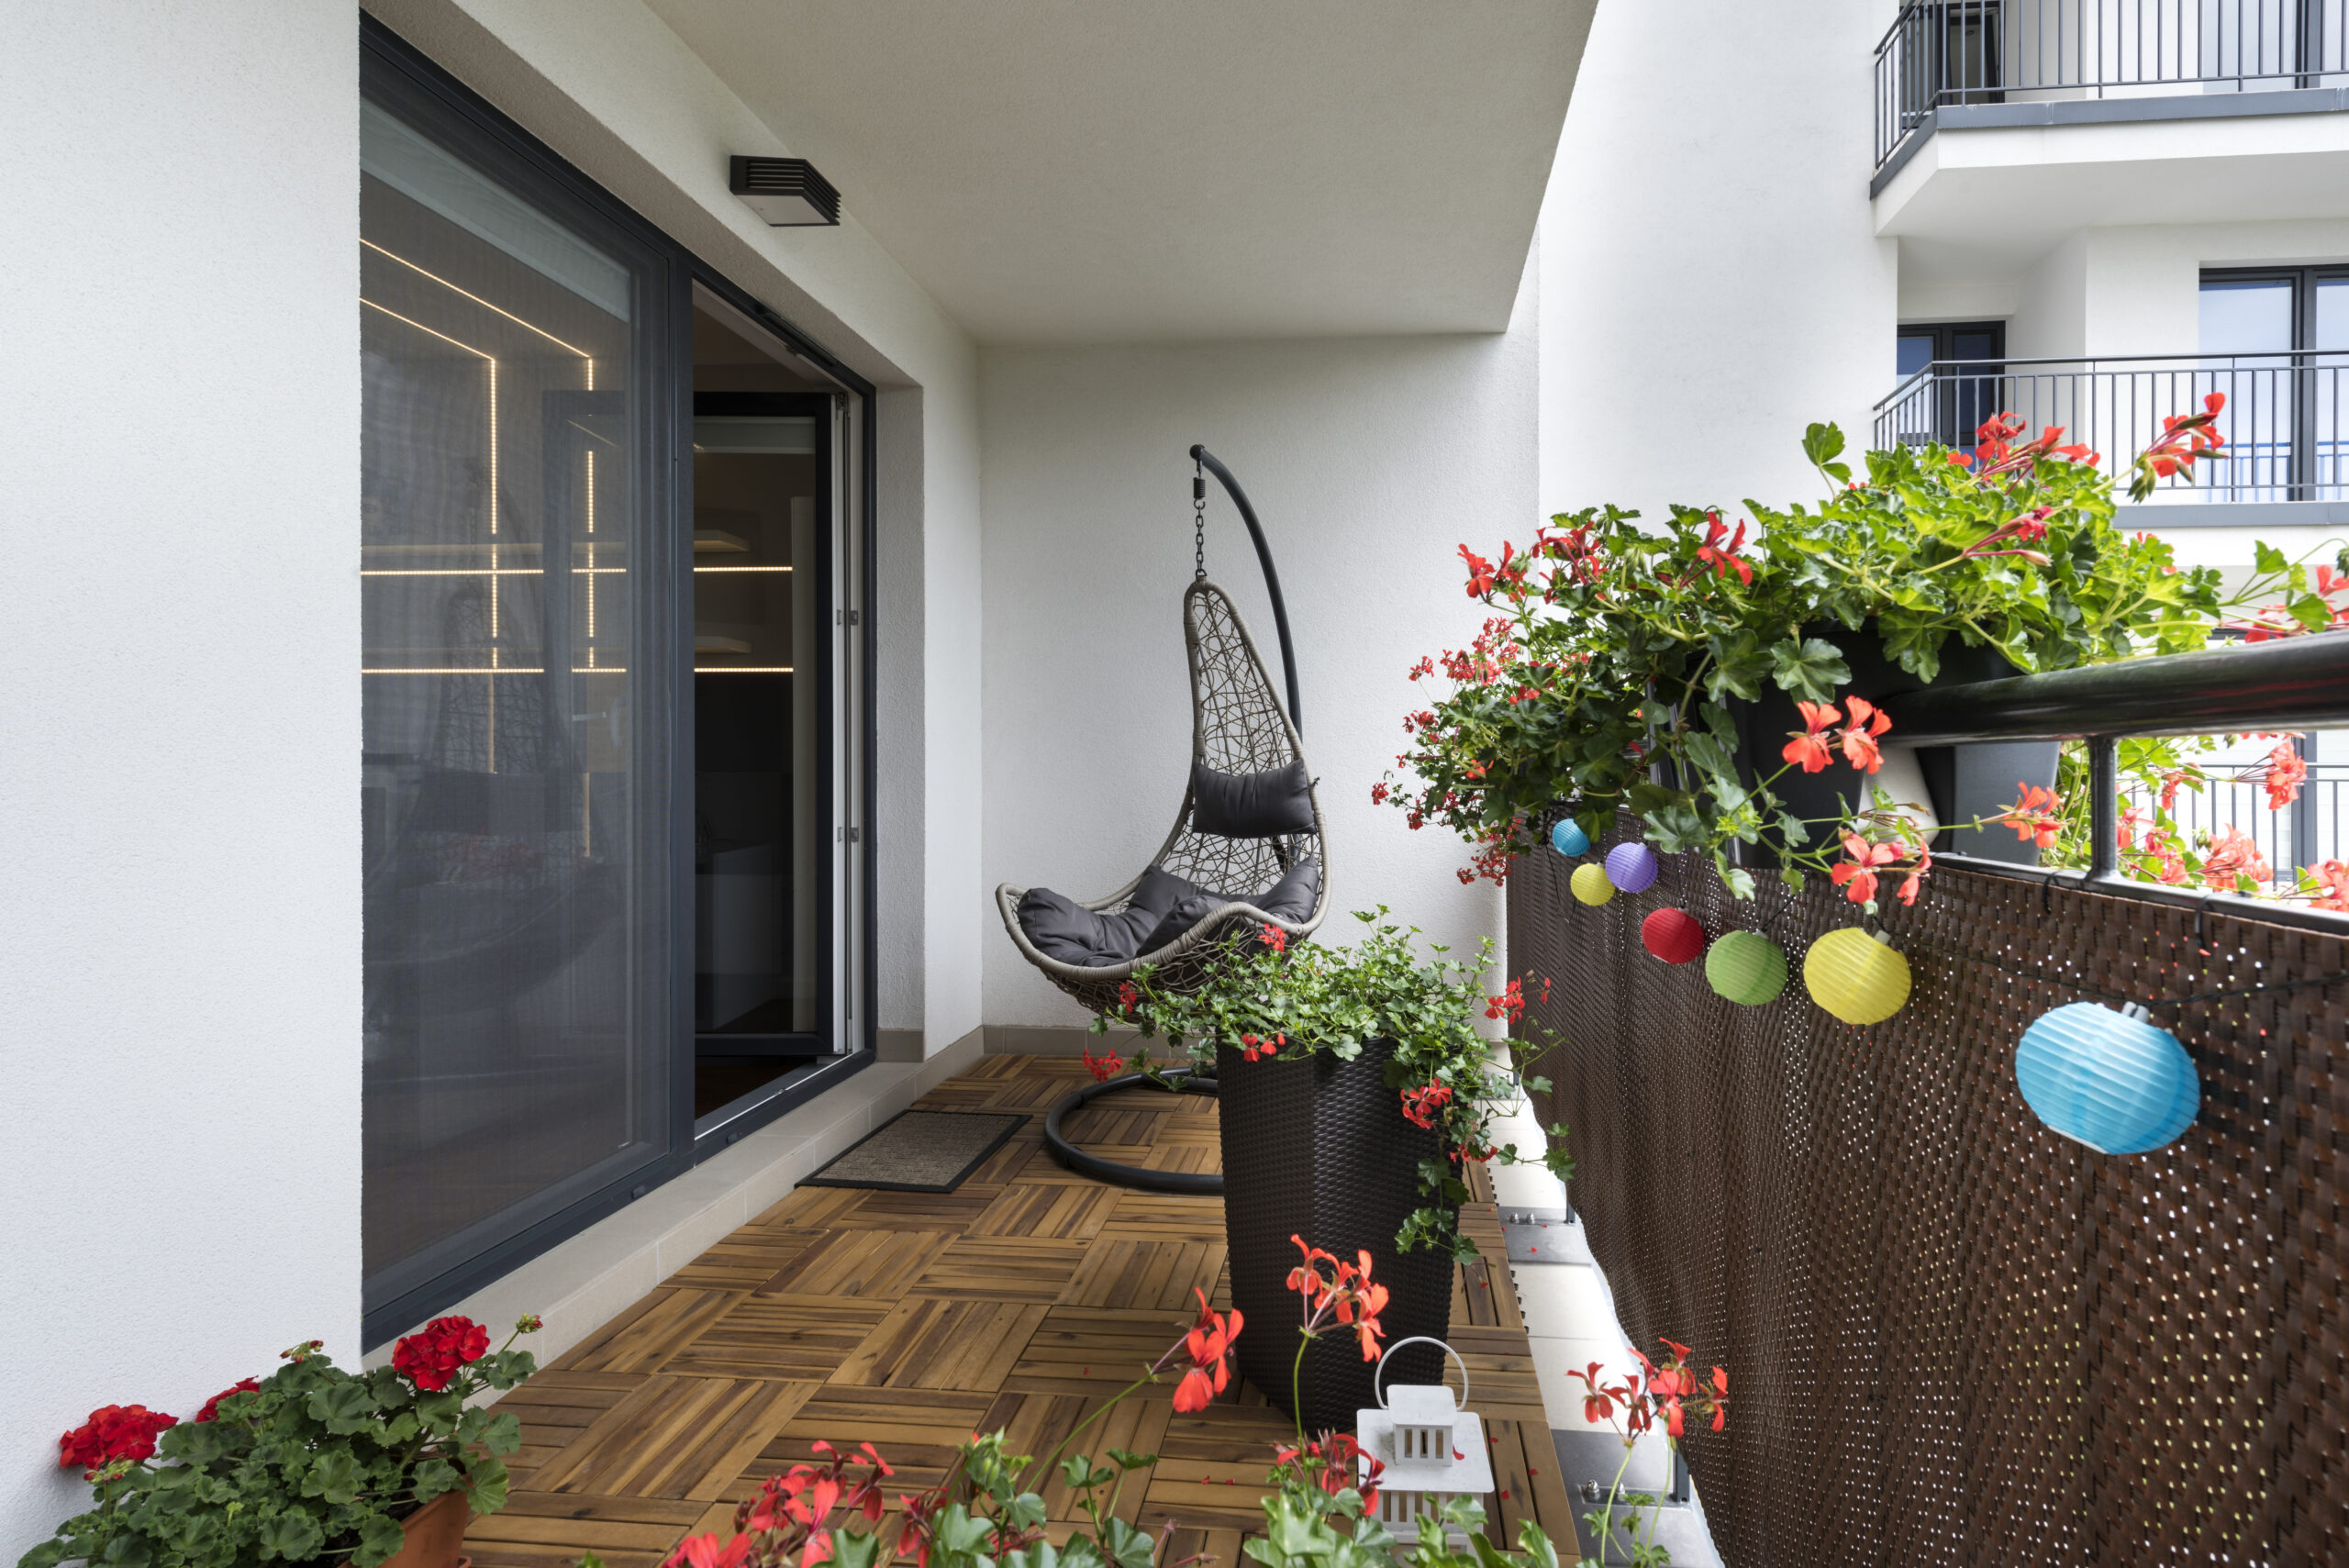 How to design a balcony garden - Eternia Windows